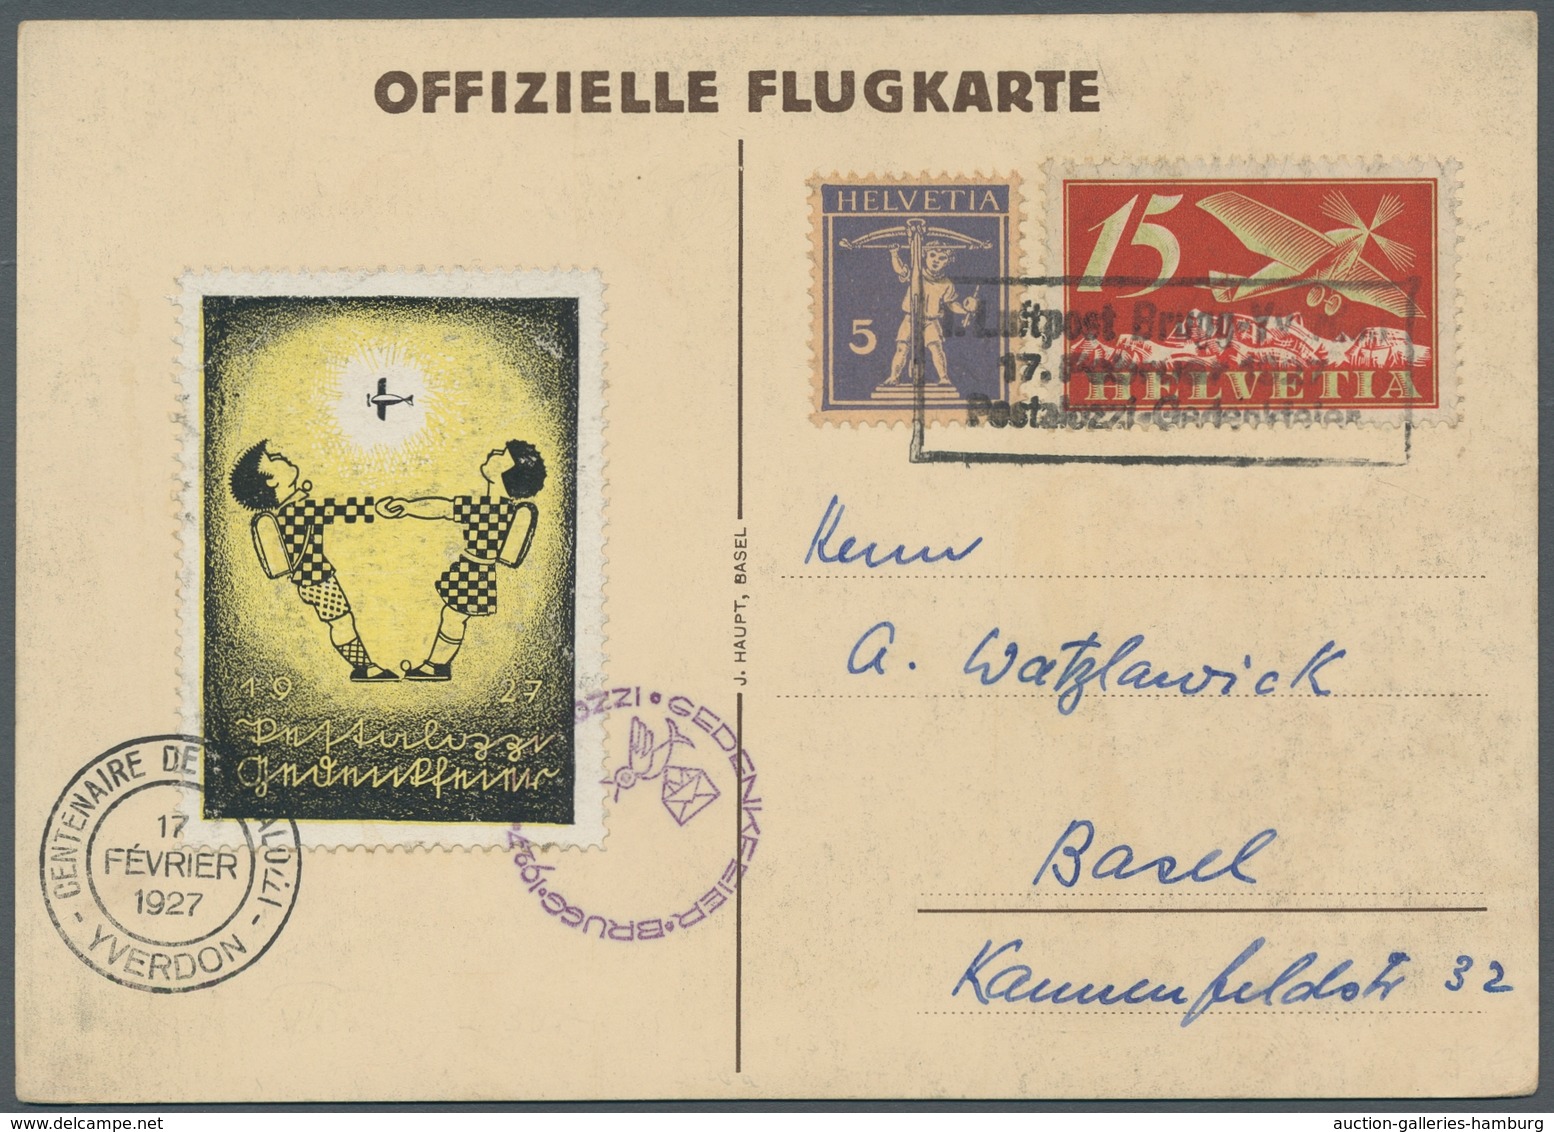 Schweiz: 1927, Pestalozzi-Gedenkflug Brugg-Yverdon, Offizielle Flugkarte Mit Farbiger Vignette Und F - Gebraucht